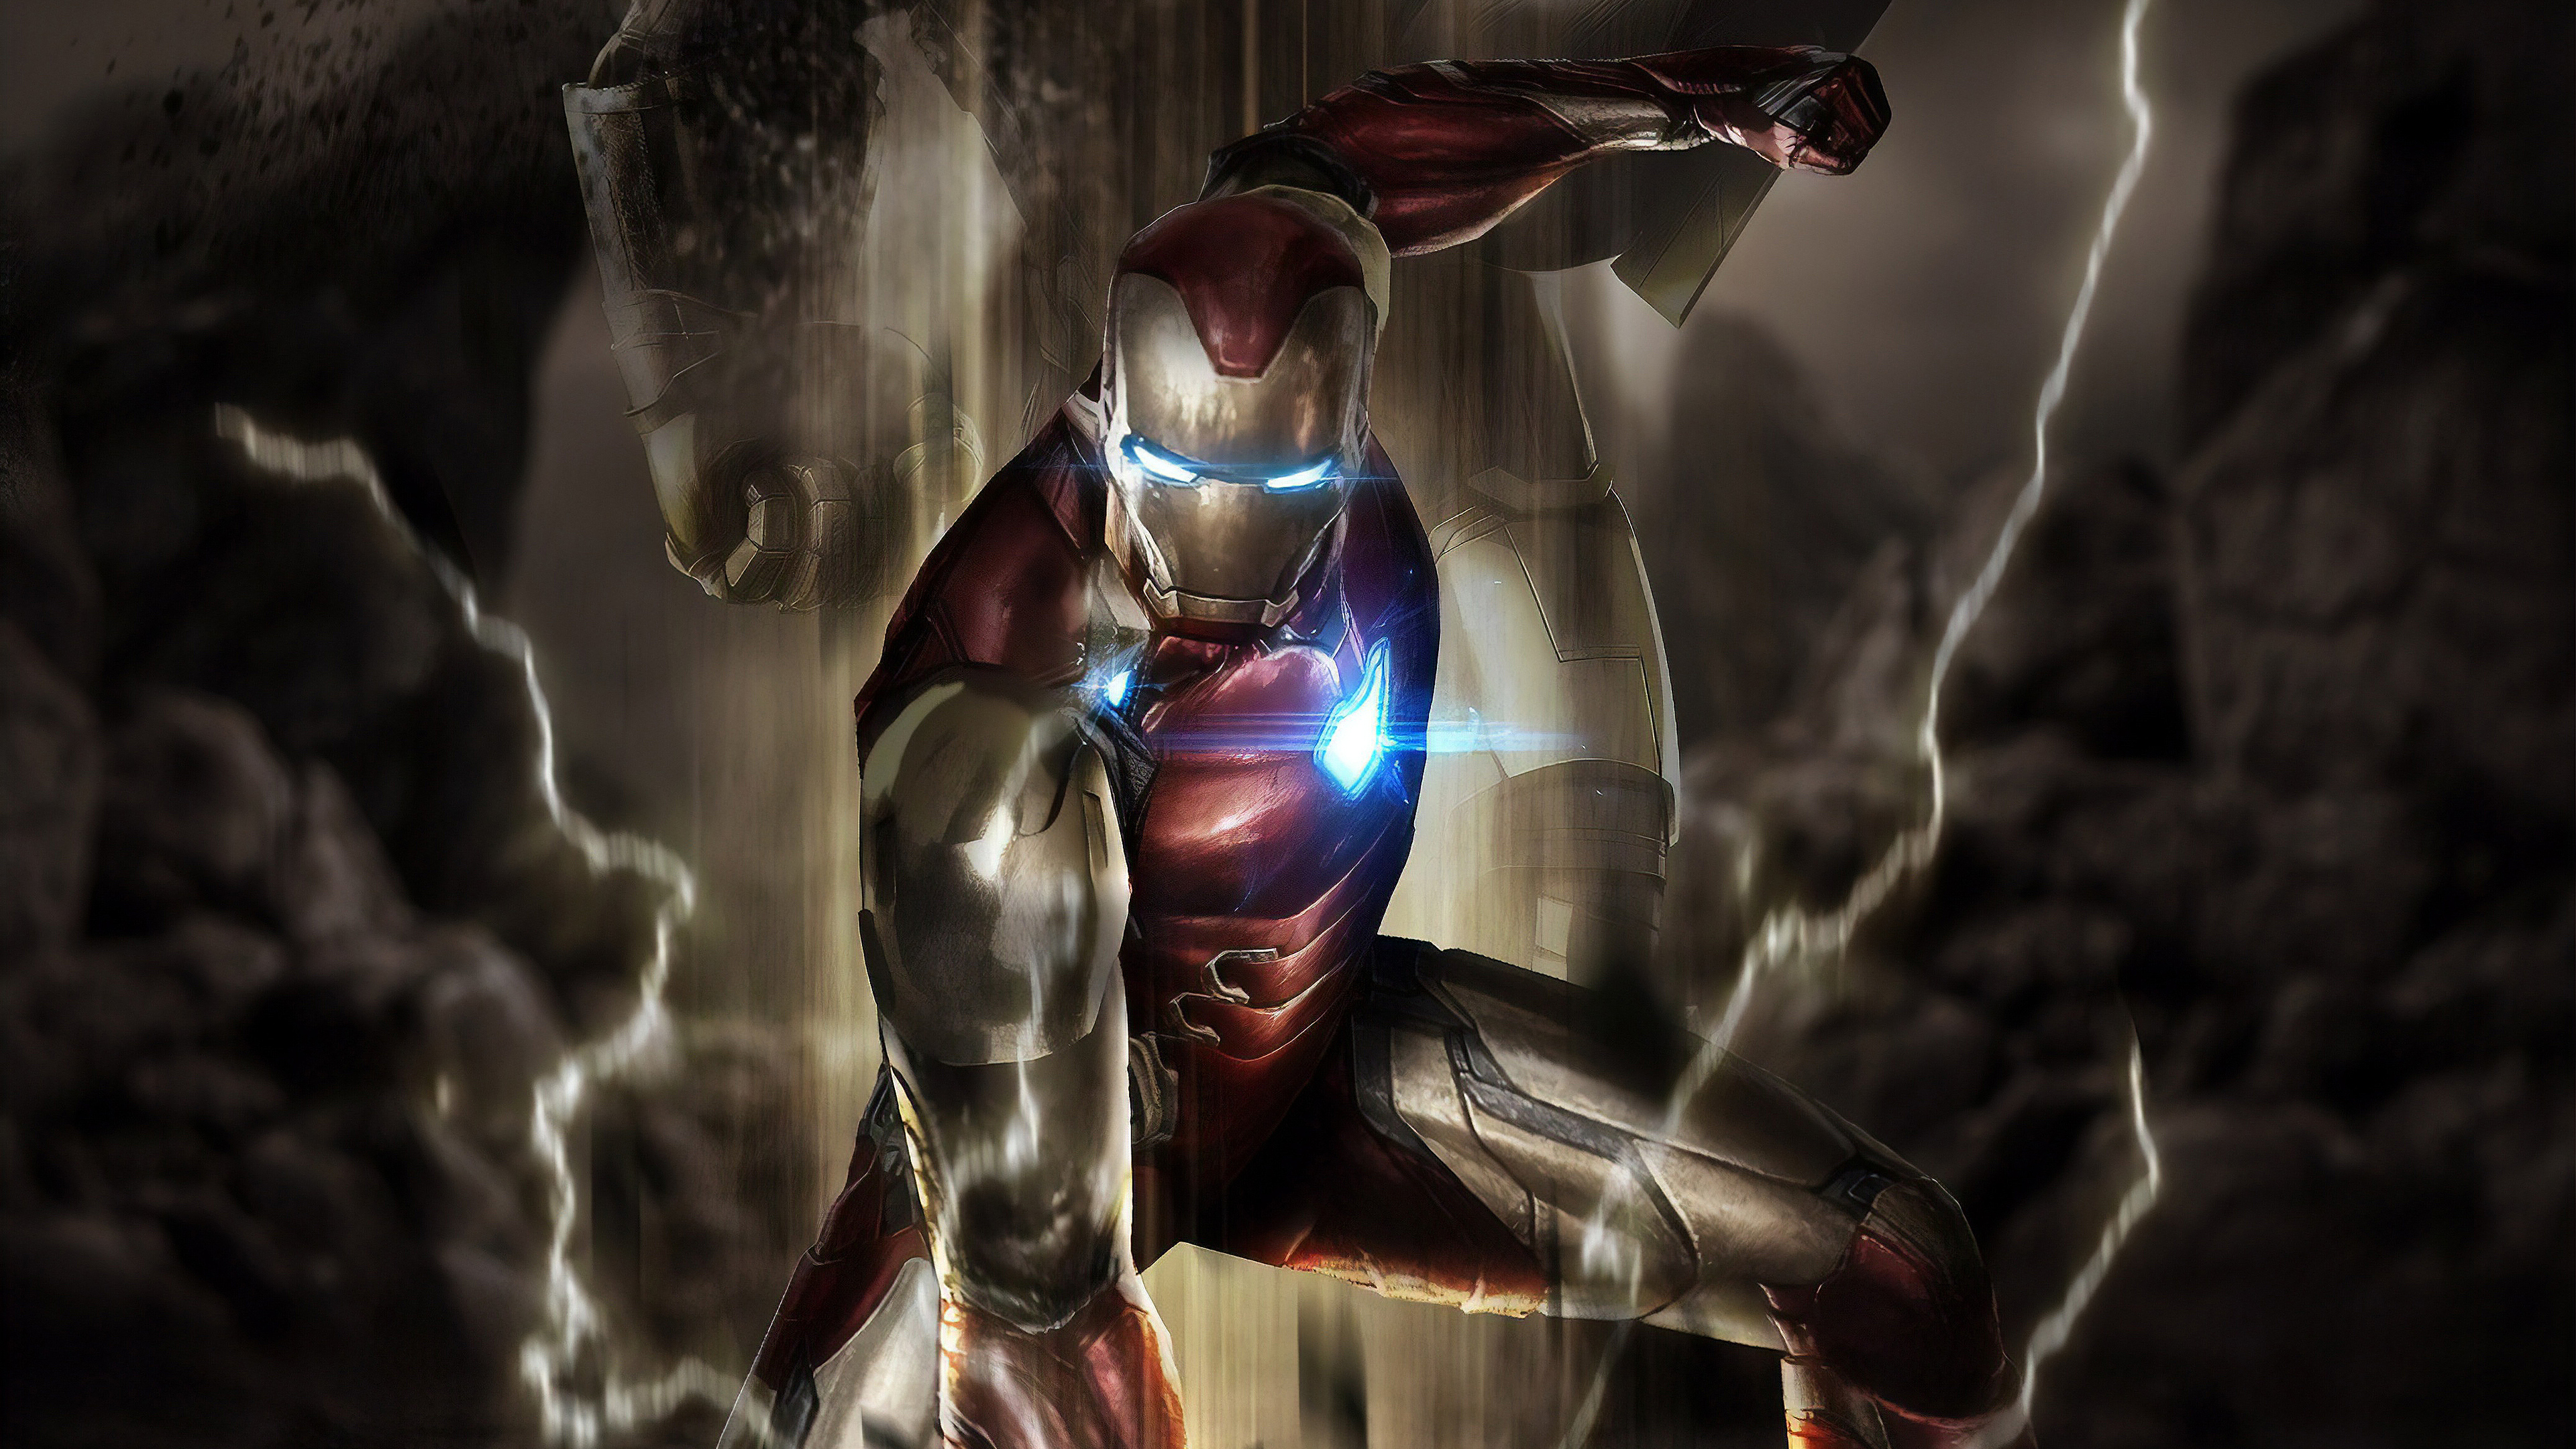 Wallpaper 4k Iron Man Avengers Endgame Movie Wallpaper